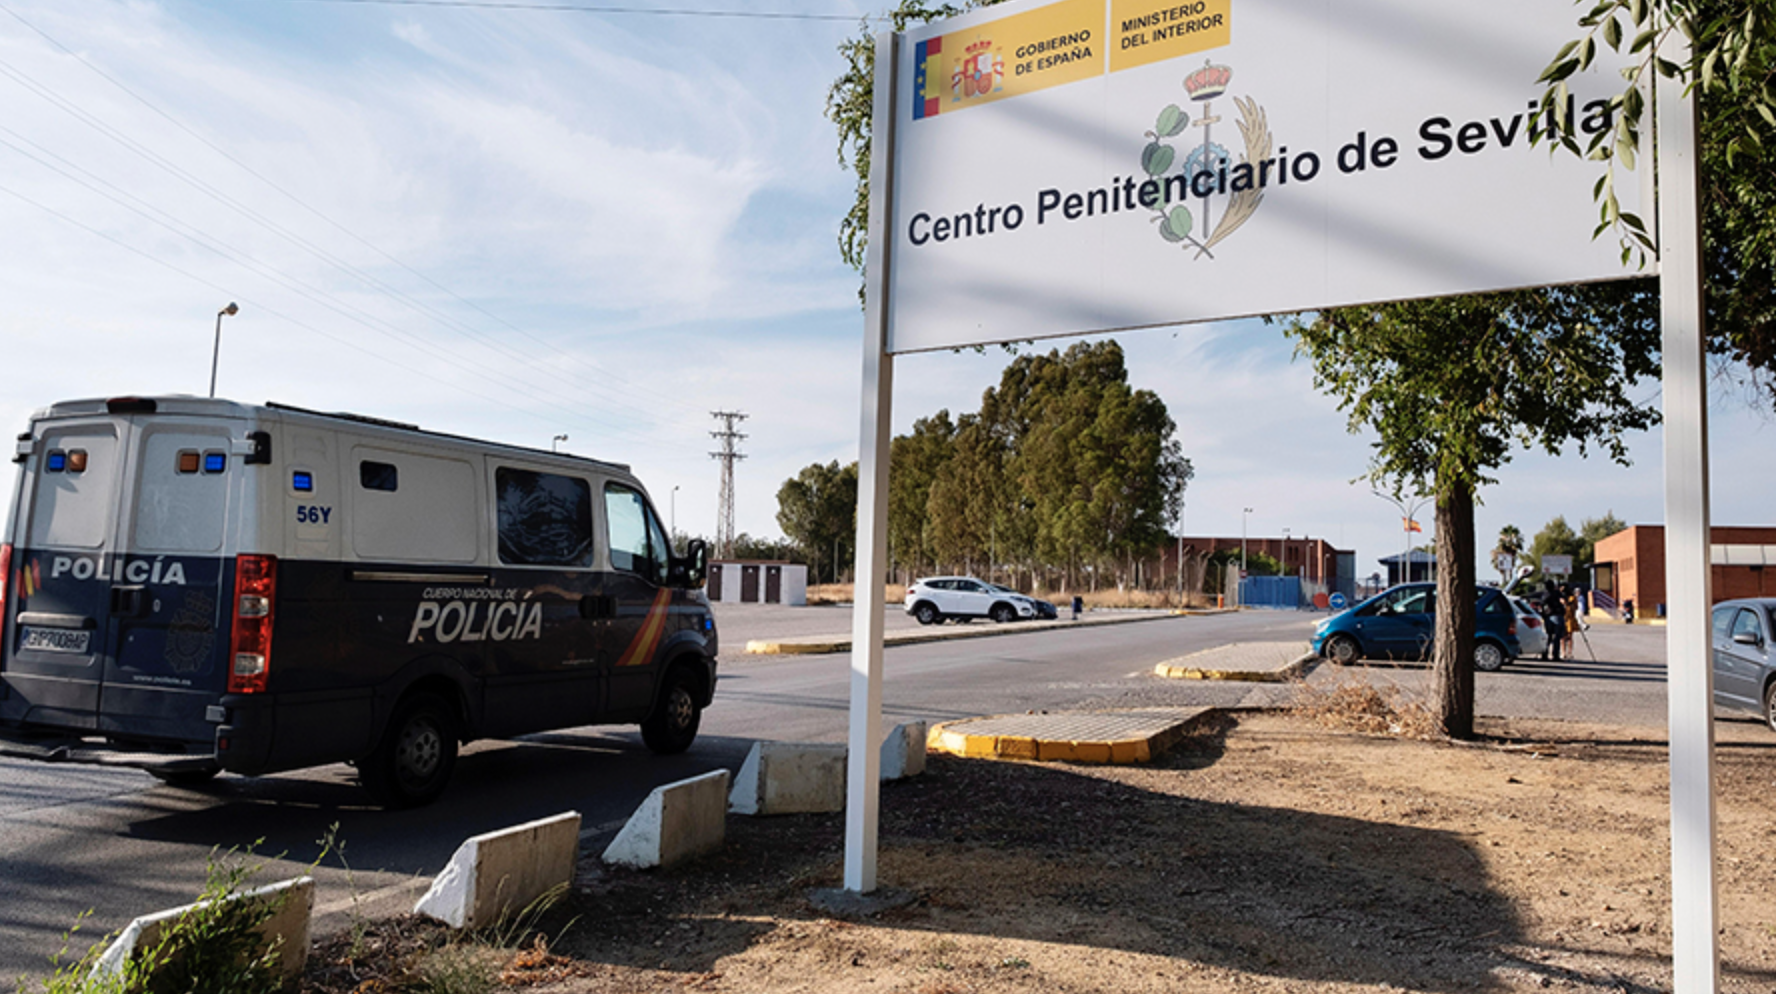 Furgón policial que traslada a los miembros de 'la Manada' a Sevilla 1. FOTO: CANAL SUR